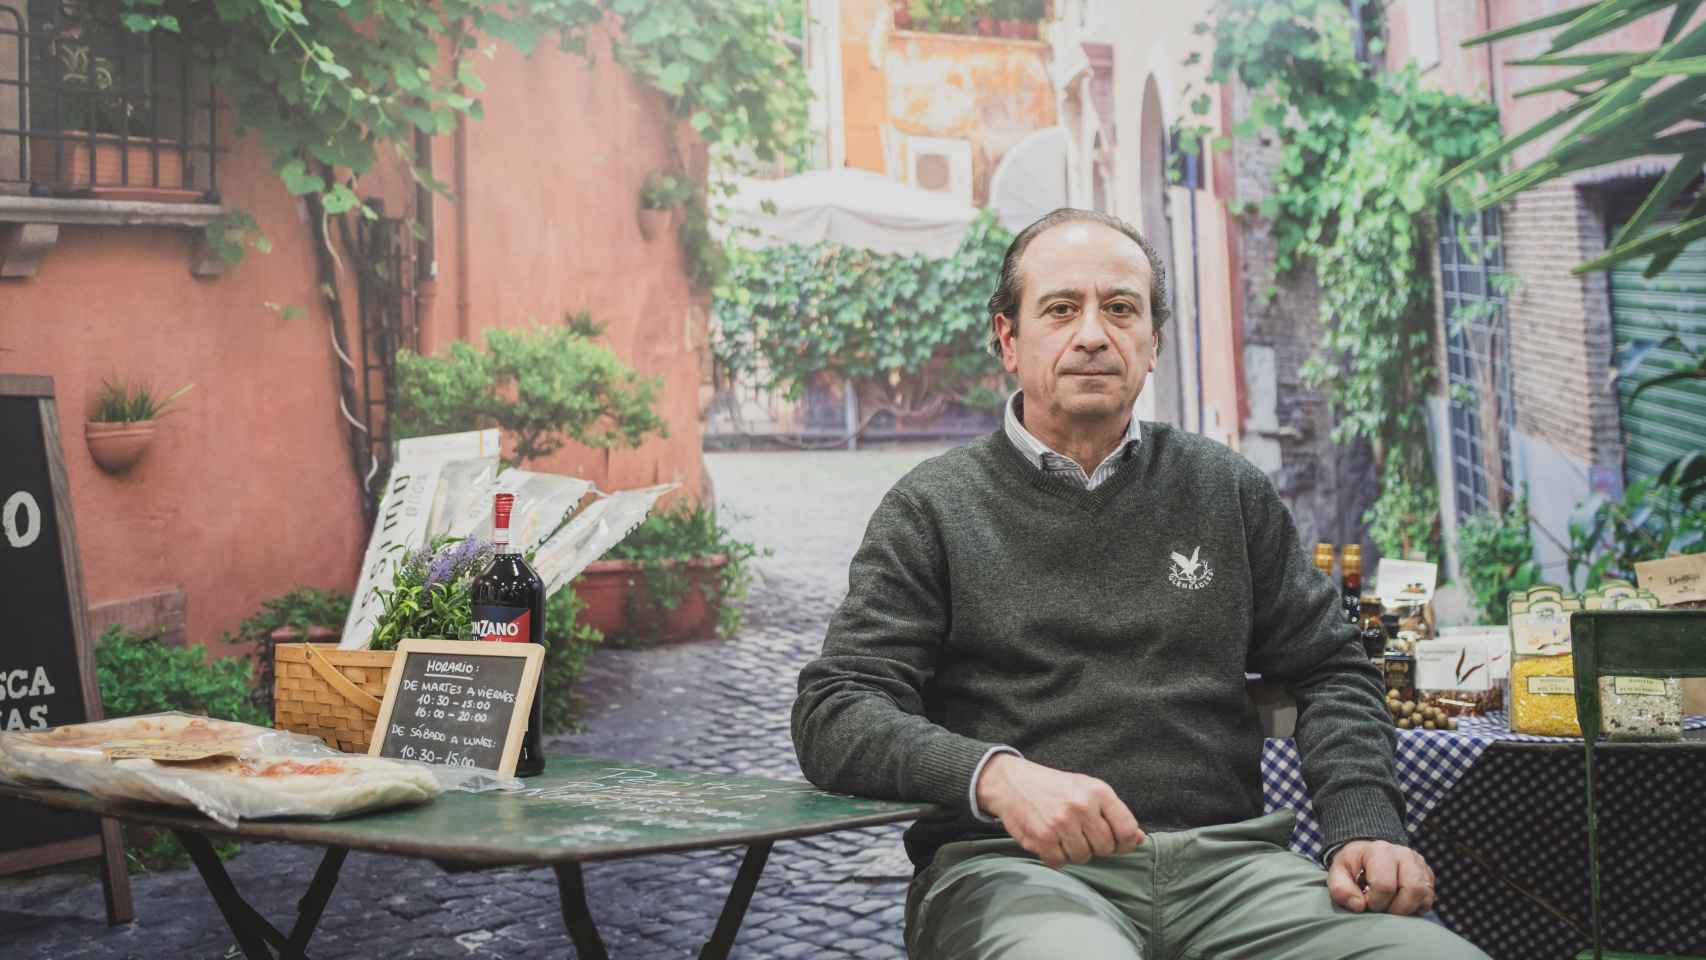 Alfredo Cifani, de los primeros italianos en el barrio que cumple justo 30 años desde que abrió su restaurante Il Pastaio (Ríos Rosas, 49).